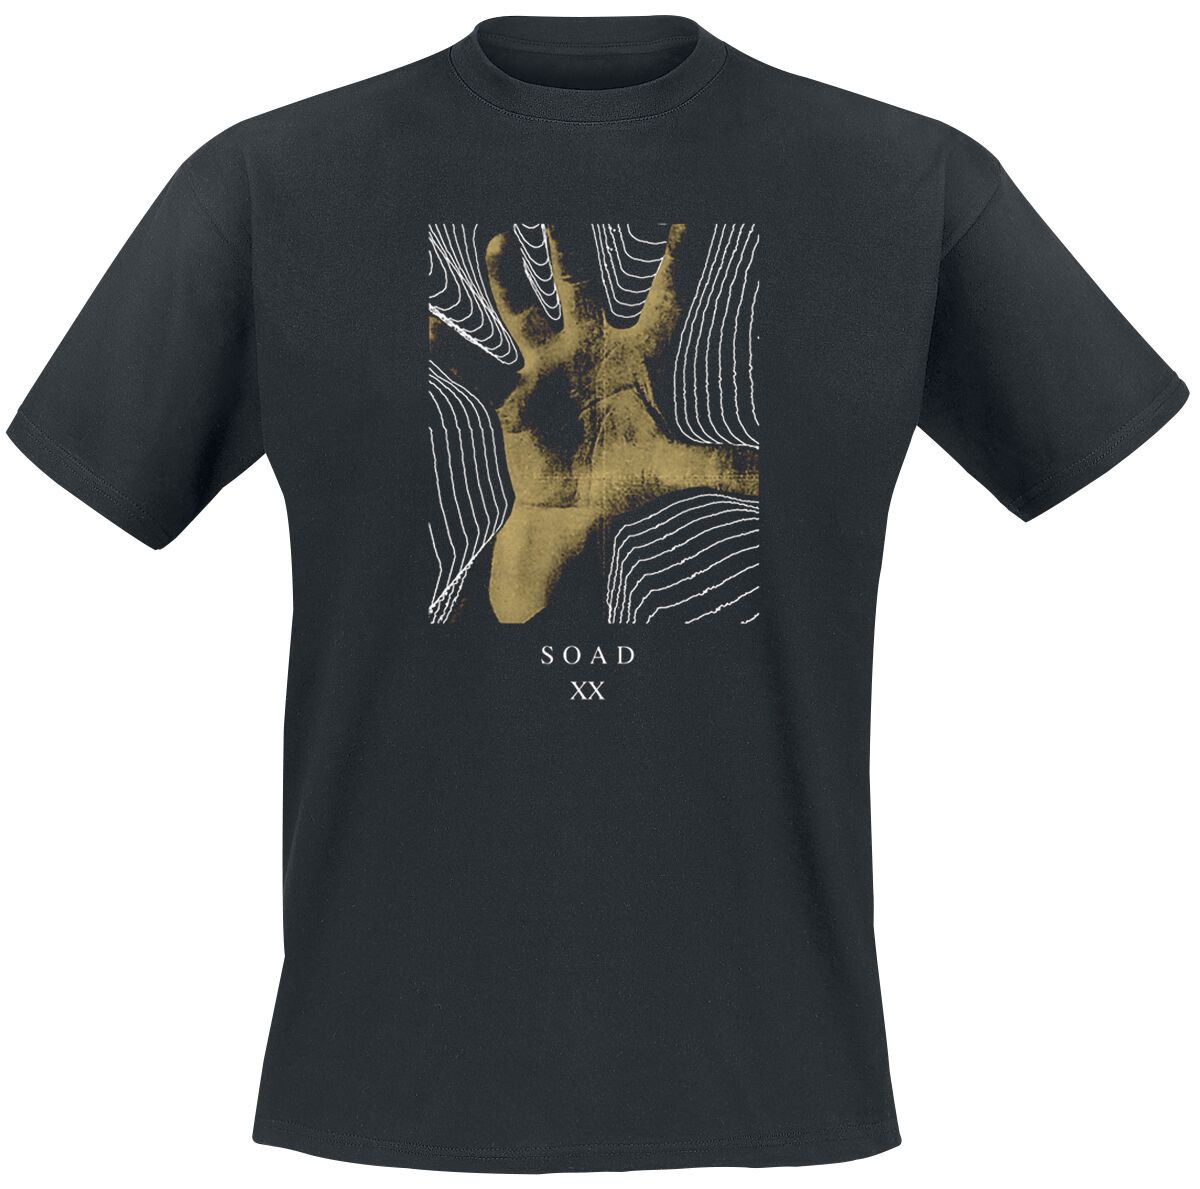 System Of A Down T-Shirt - 20 Years Hand - S bis XXL - für Männer - Größe S - schwarz  - Lizenziertes Merchandise!